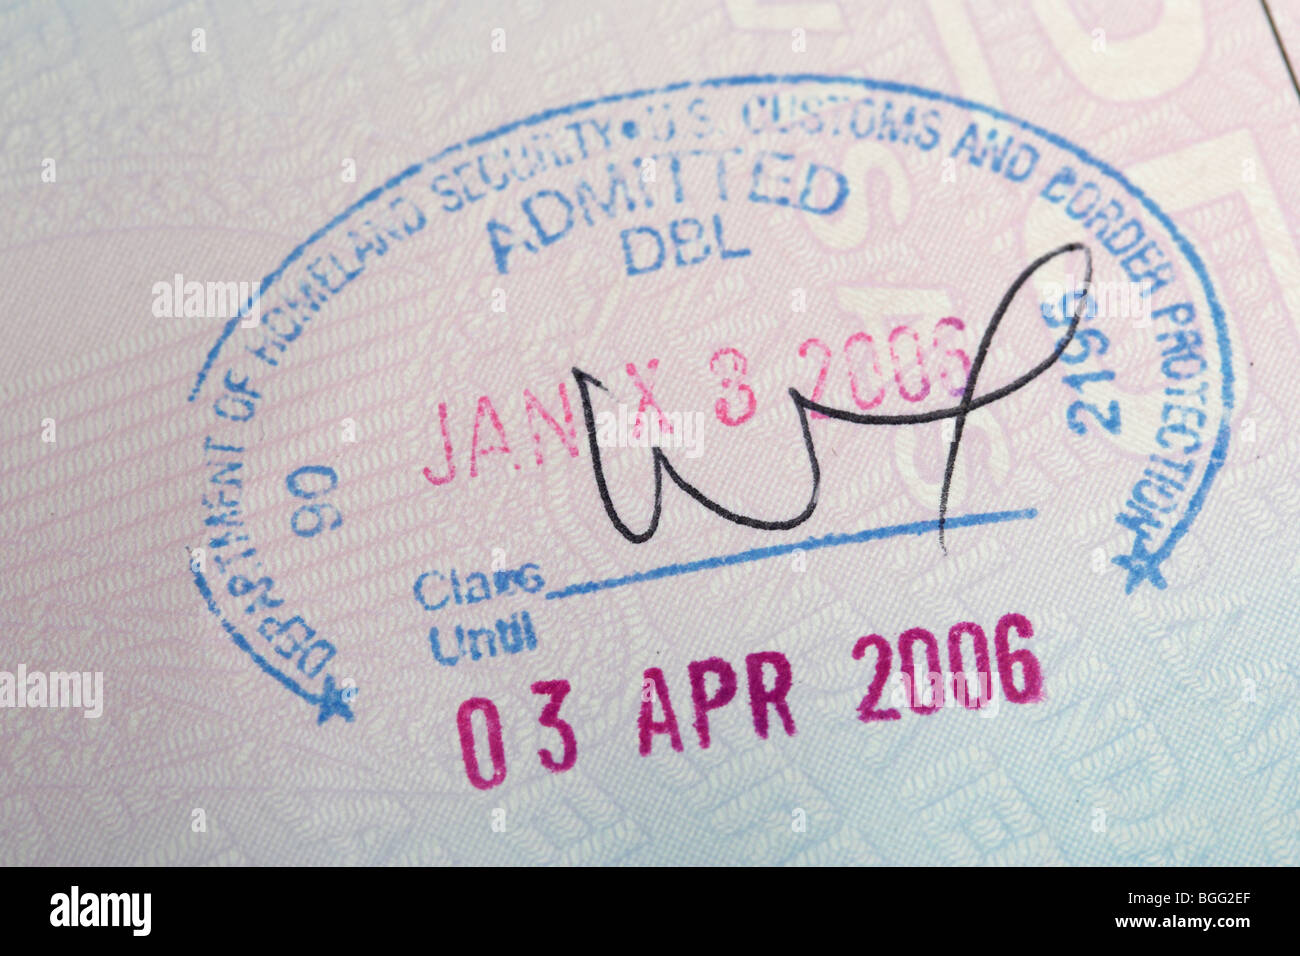 Irlandesa de la UE pasaporte con visa de entrada del departamento de seguridad nacional y protección de fronteras y aduanas de EE.UU. juego en Dublín Foto de stock